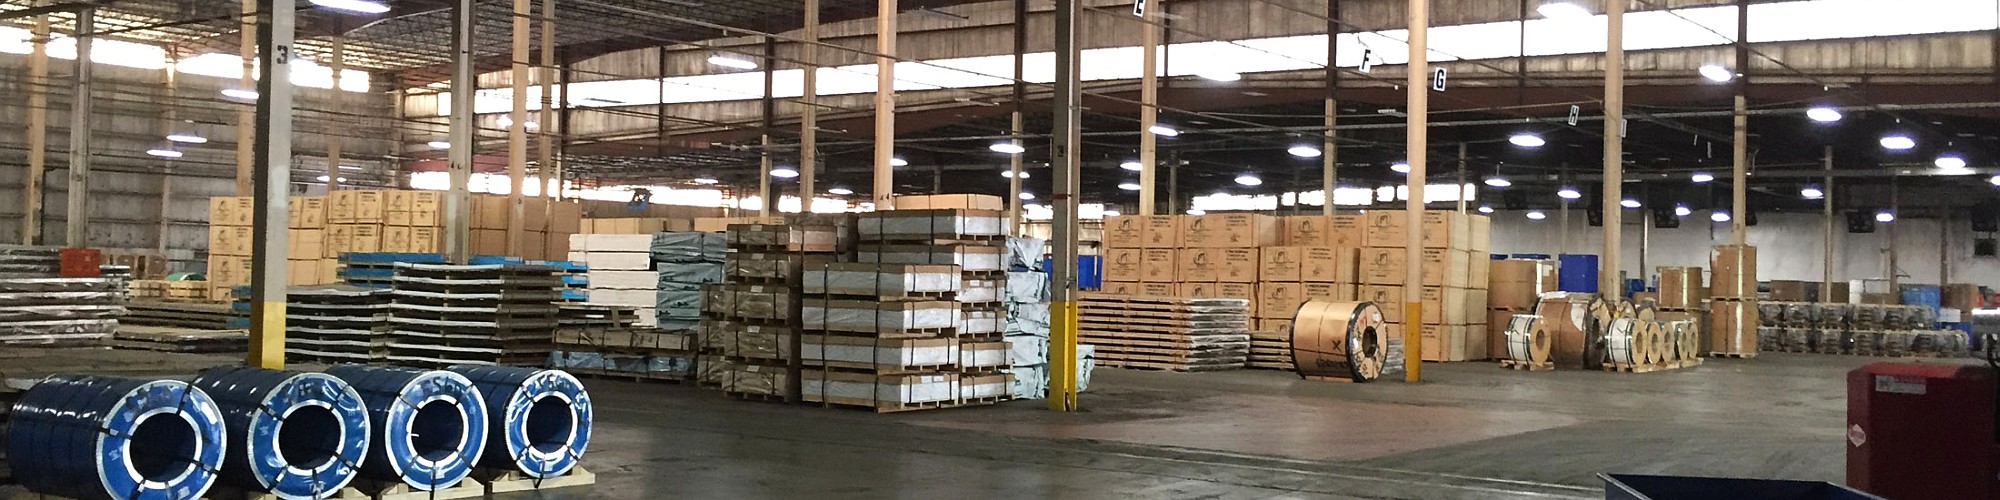 indoor and outdoor warehouse storage